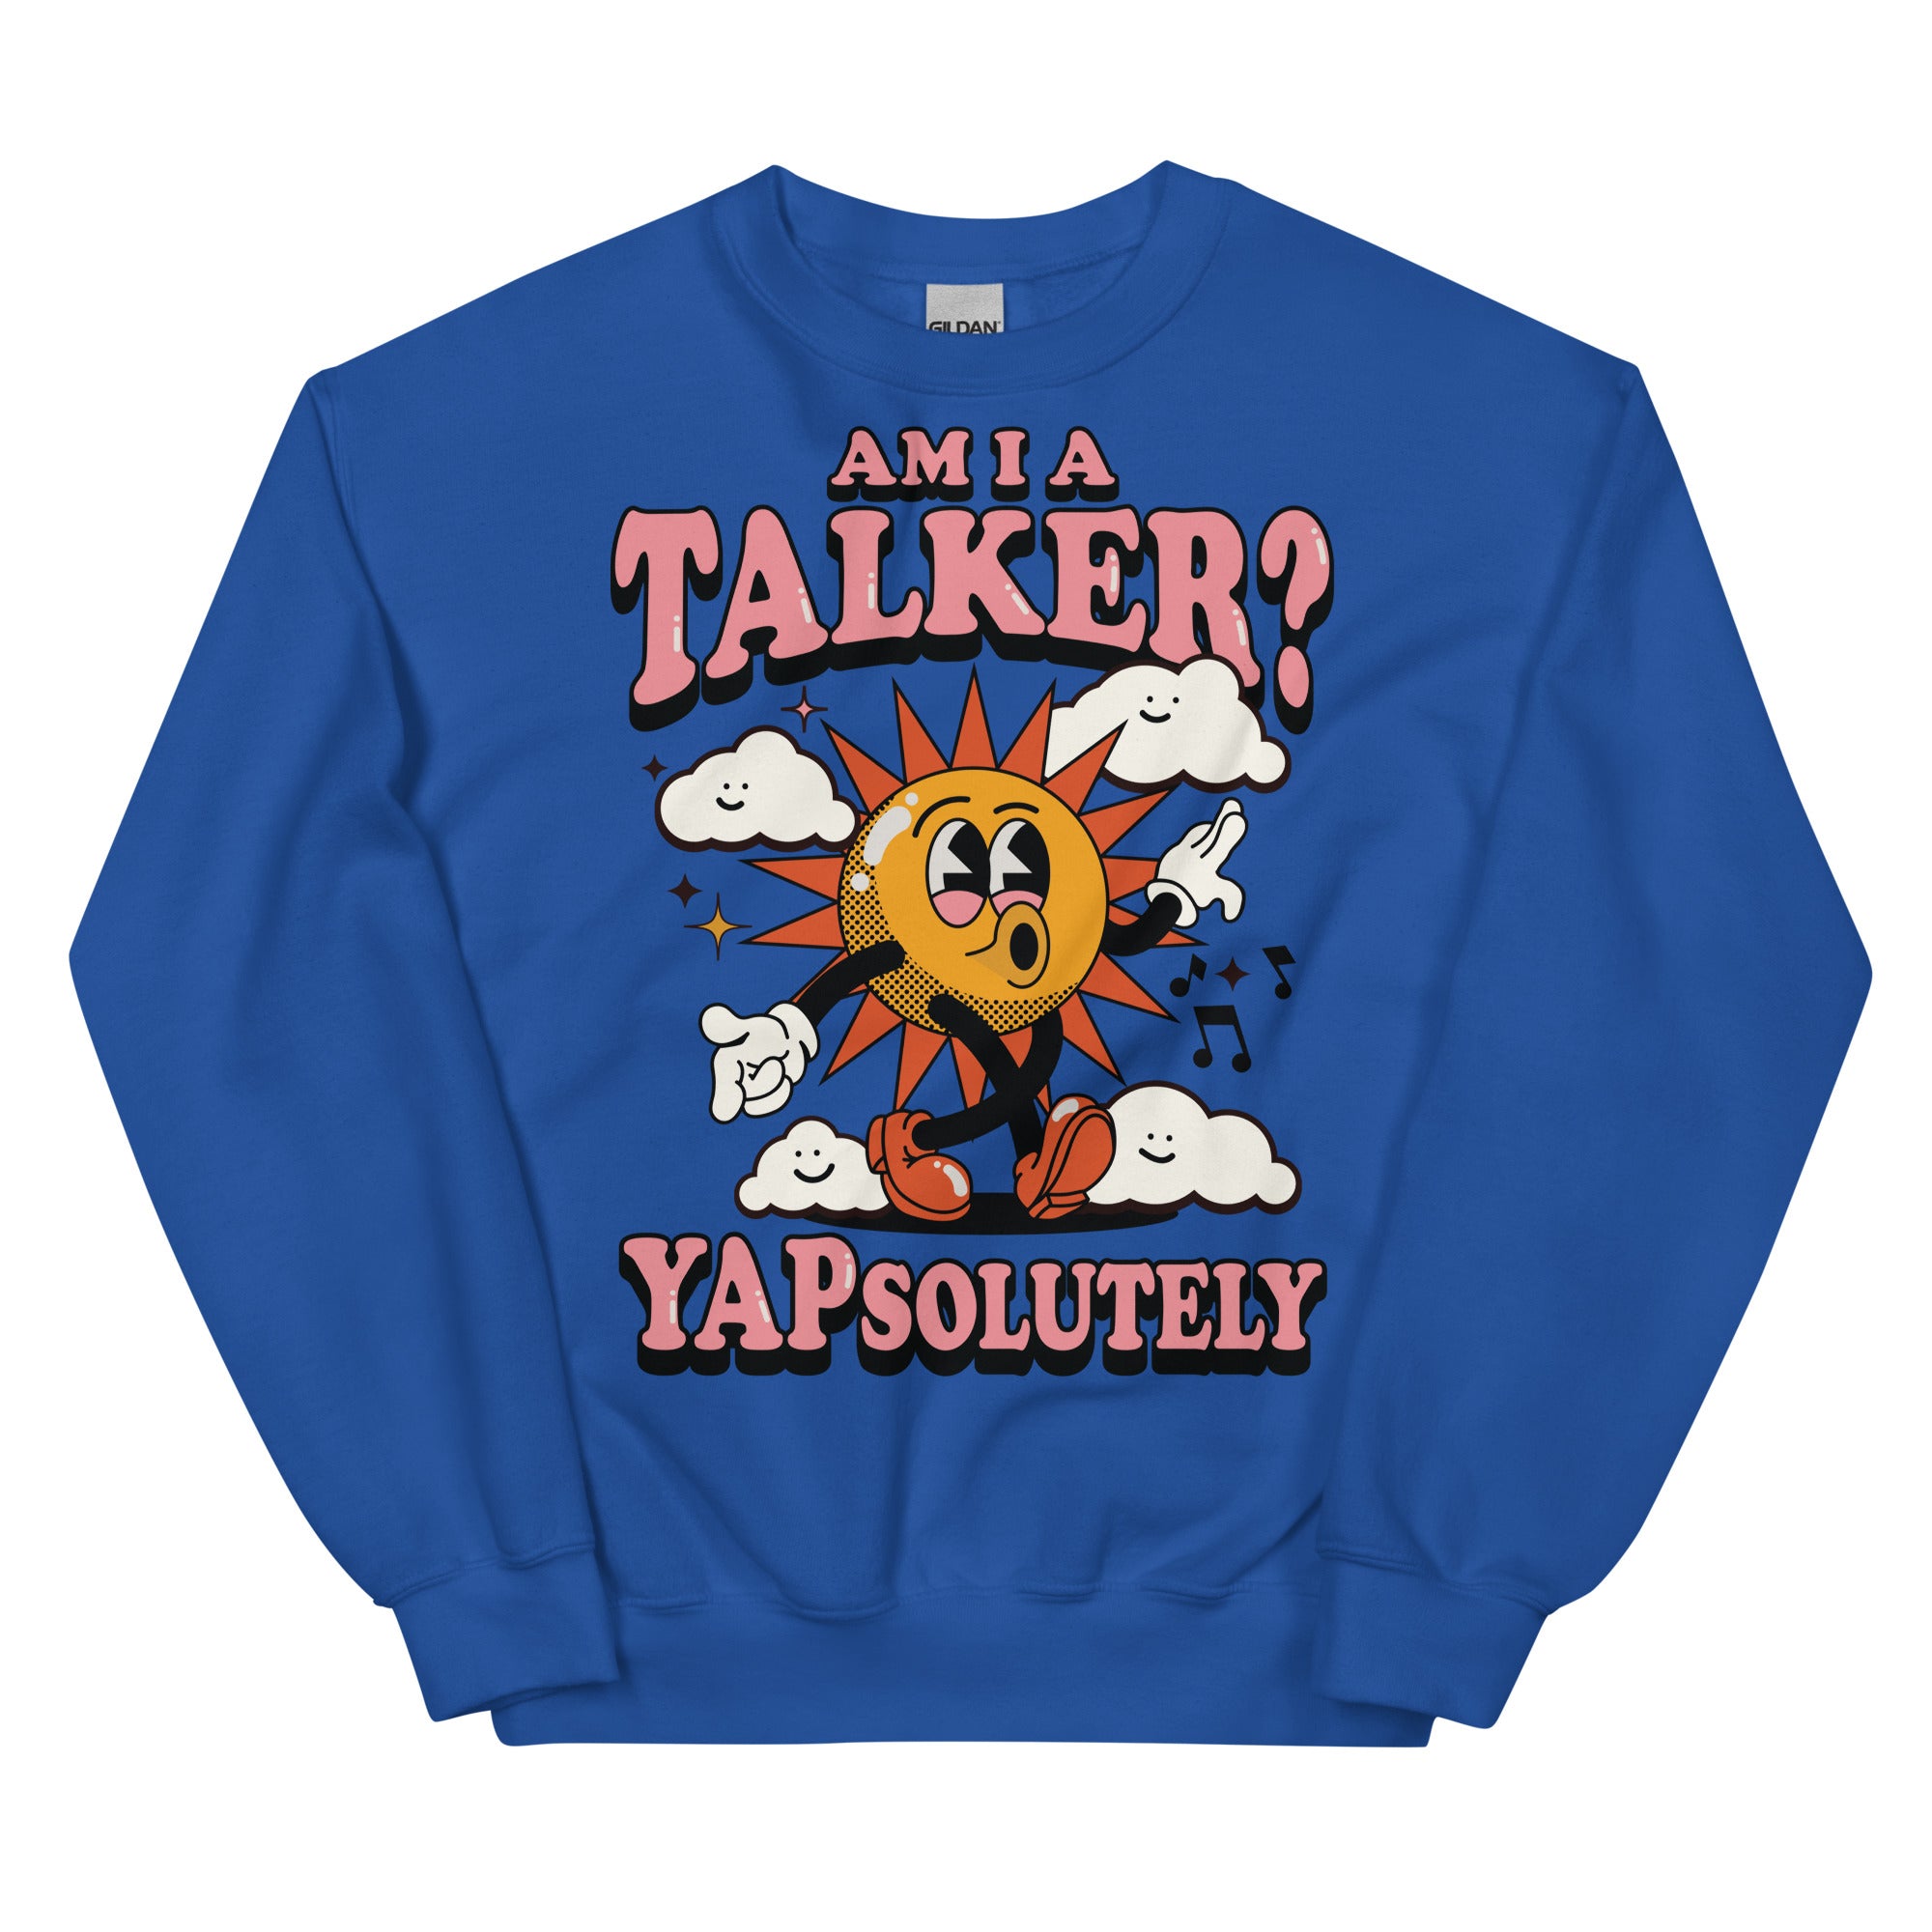 Am I A Talker? Yapsolutely Unisex Sweatshirt